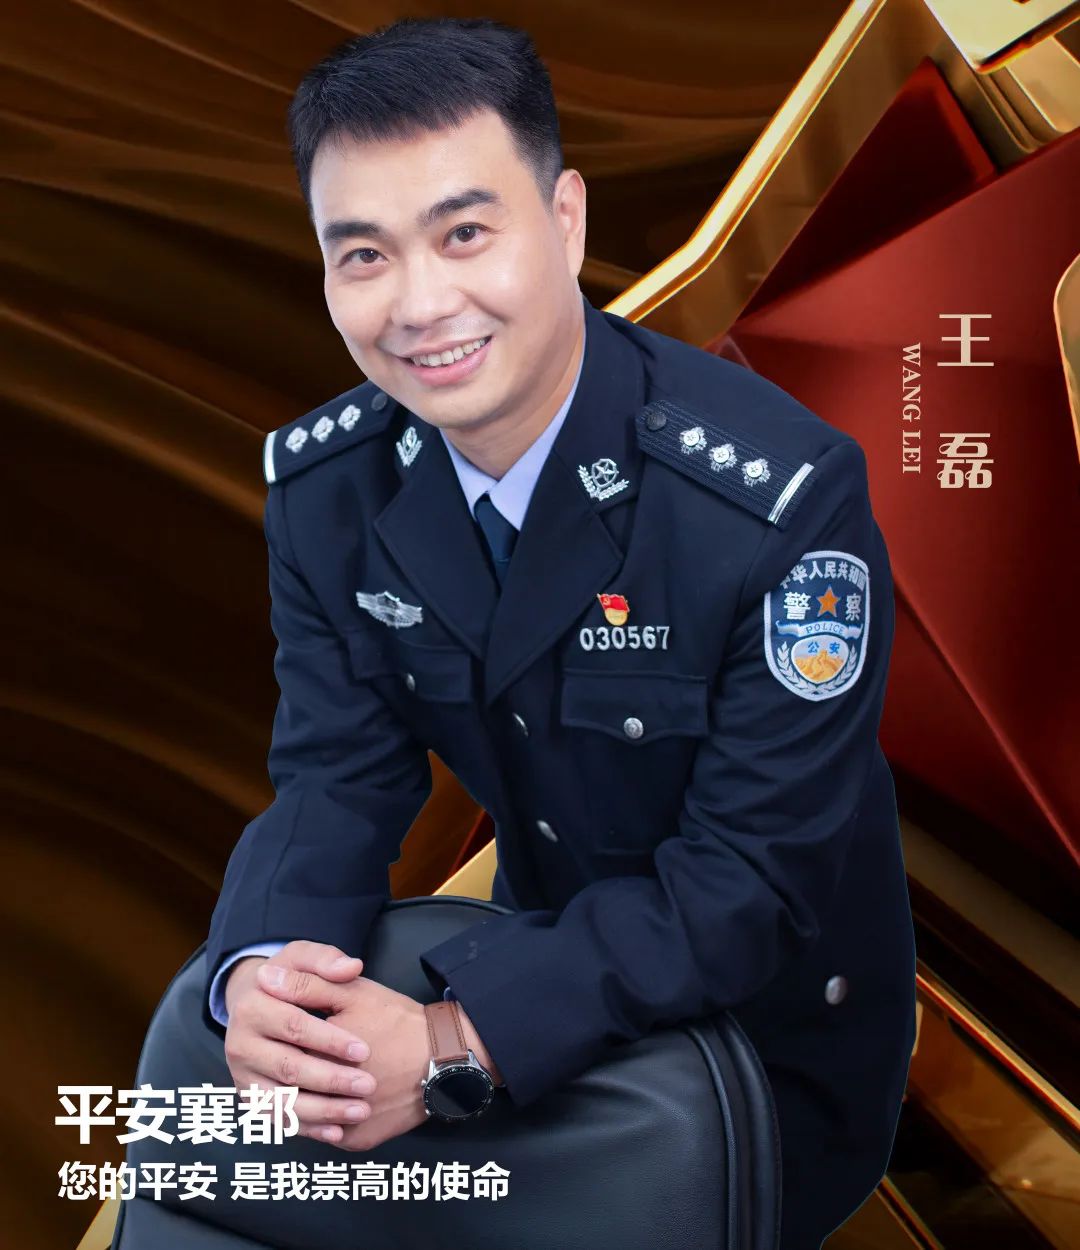 王磊公安部警卫局图片